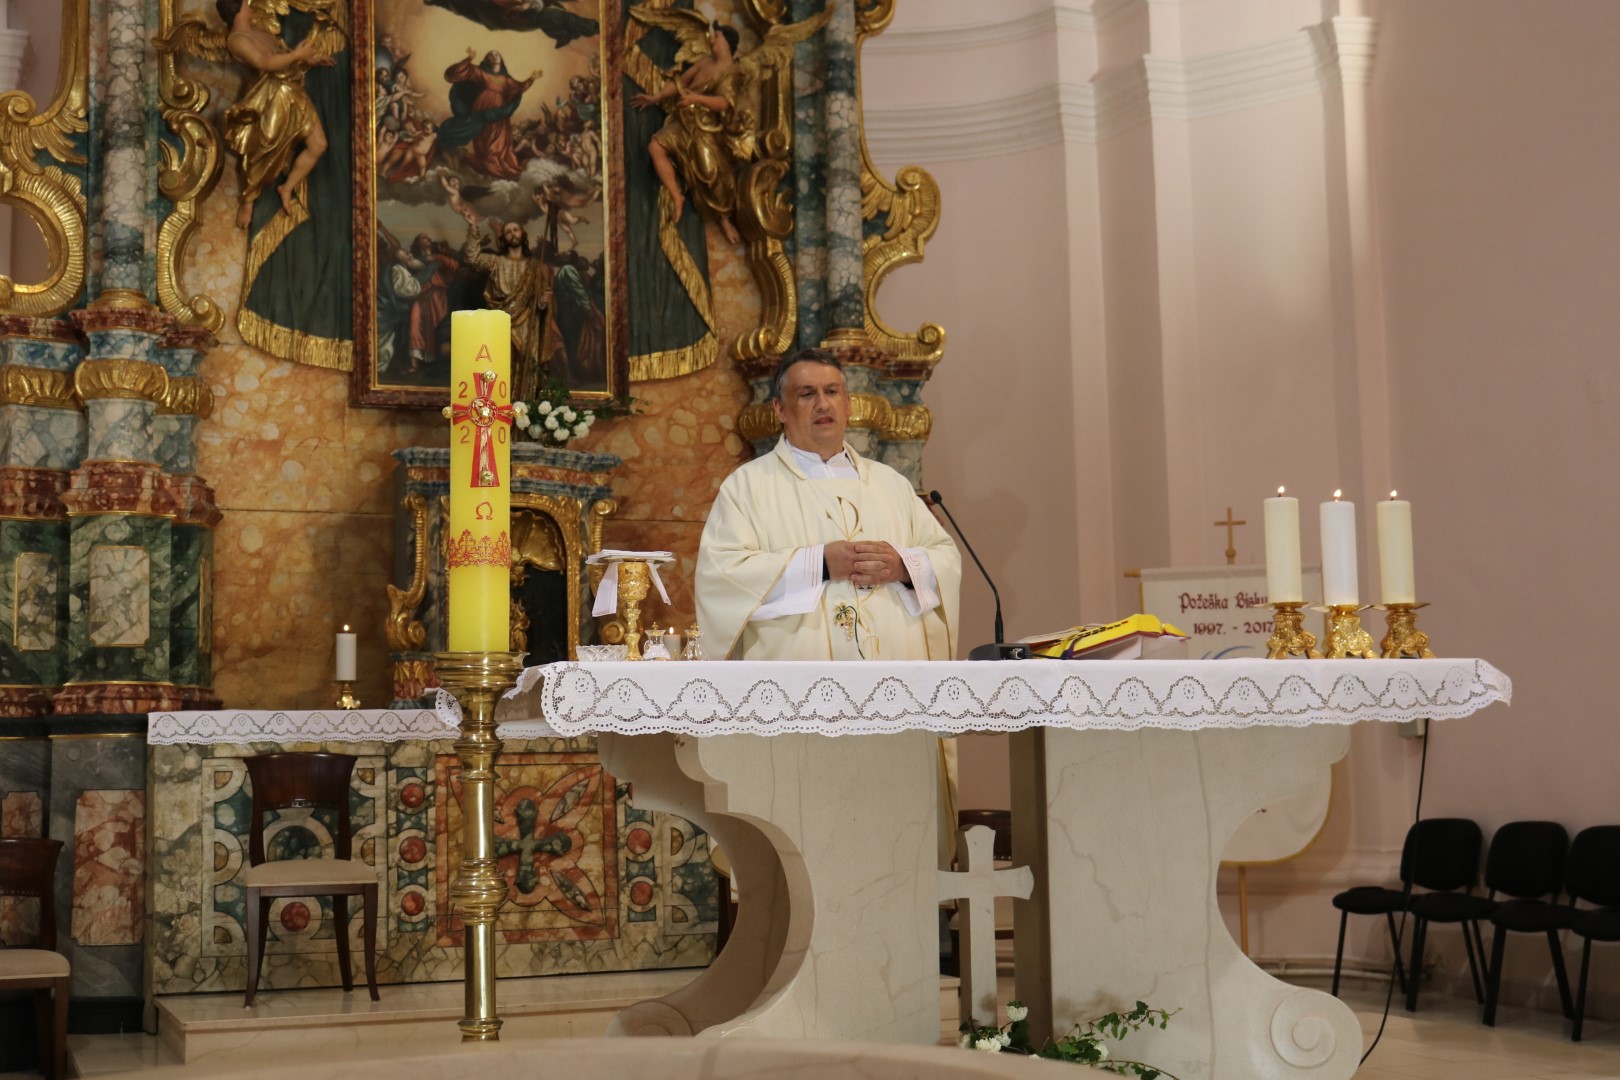 ŽUPA UBDM PAKRAC Raspored liturgijskih slavlja Velikog tjedna